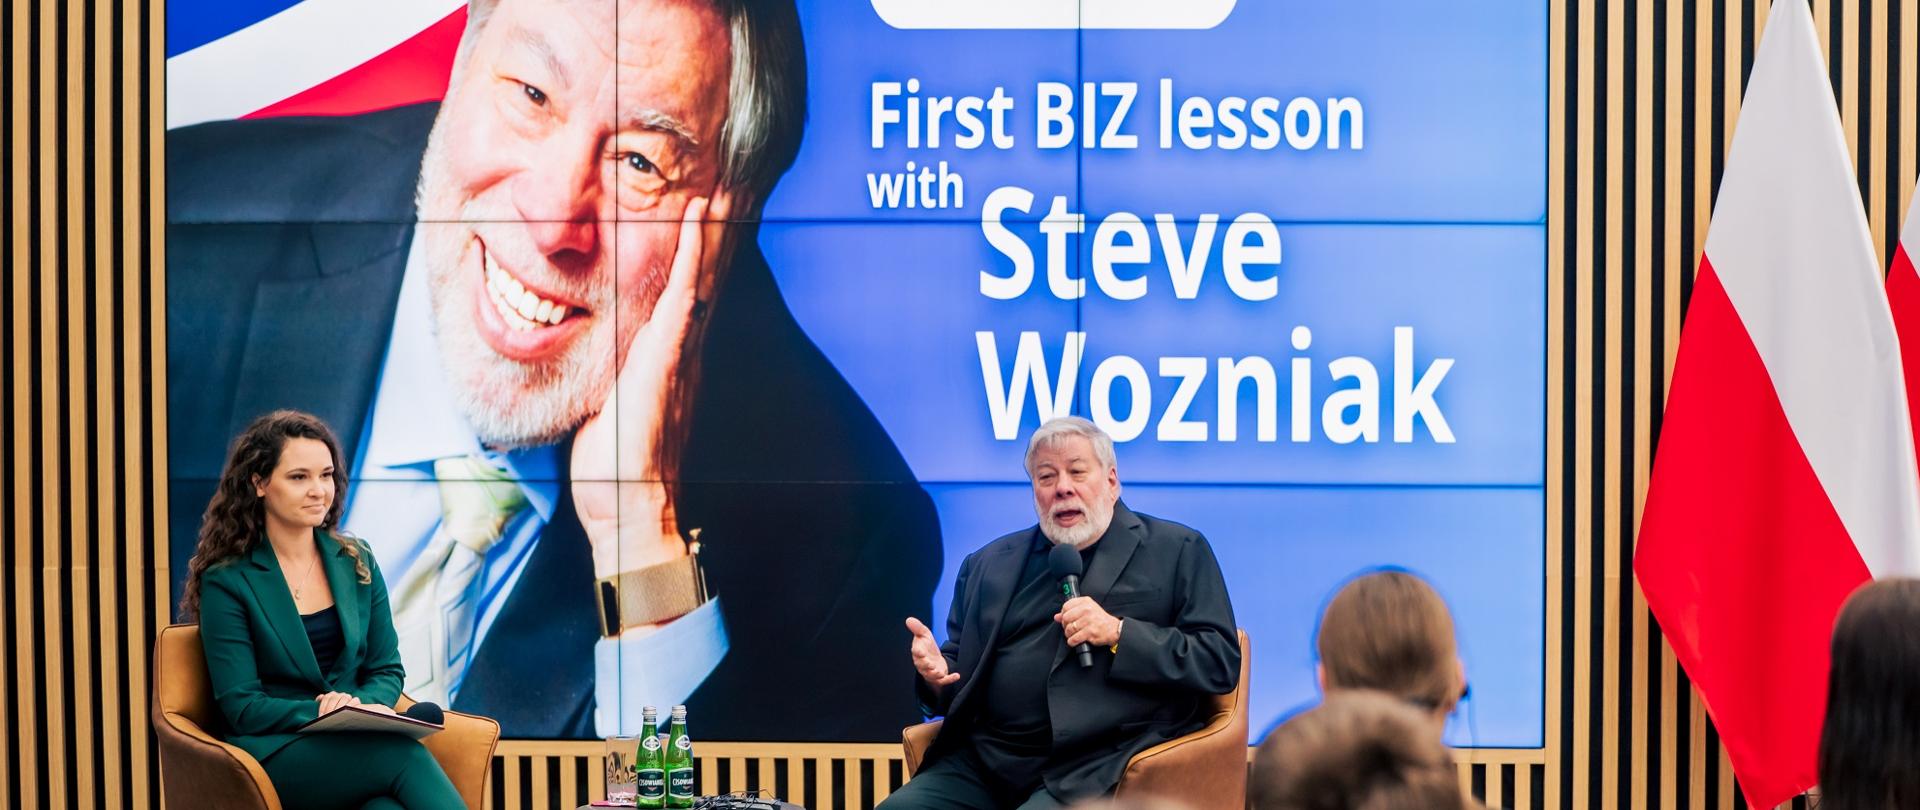 Z przodu sali pod wielkim ekranem z napisem First BIZ lesson with Steve Wozniak siedzi Steve Wozniak i mówi do trzymanego w ręku mikrofonu, obok niego kobieta w zielonym garniturze, przed nimi na sali siedzą ludzie.